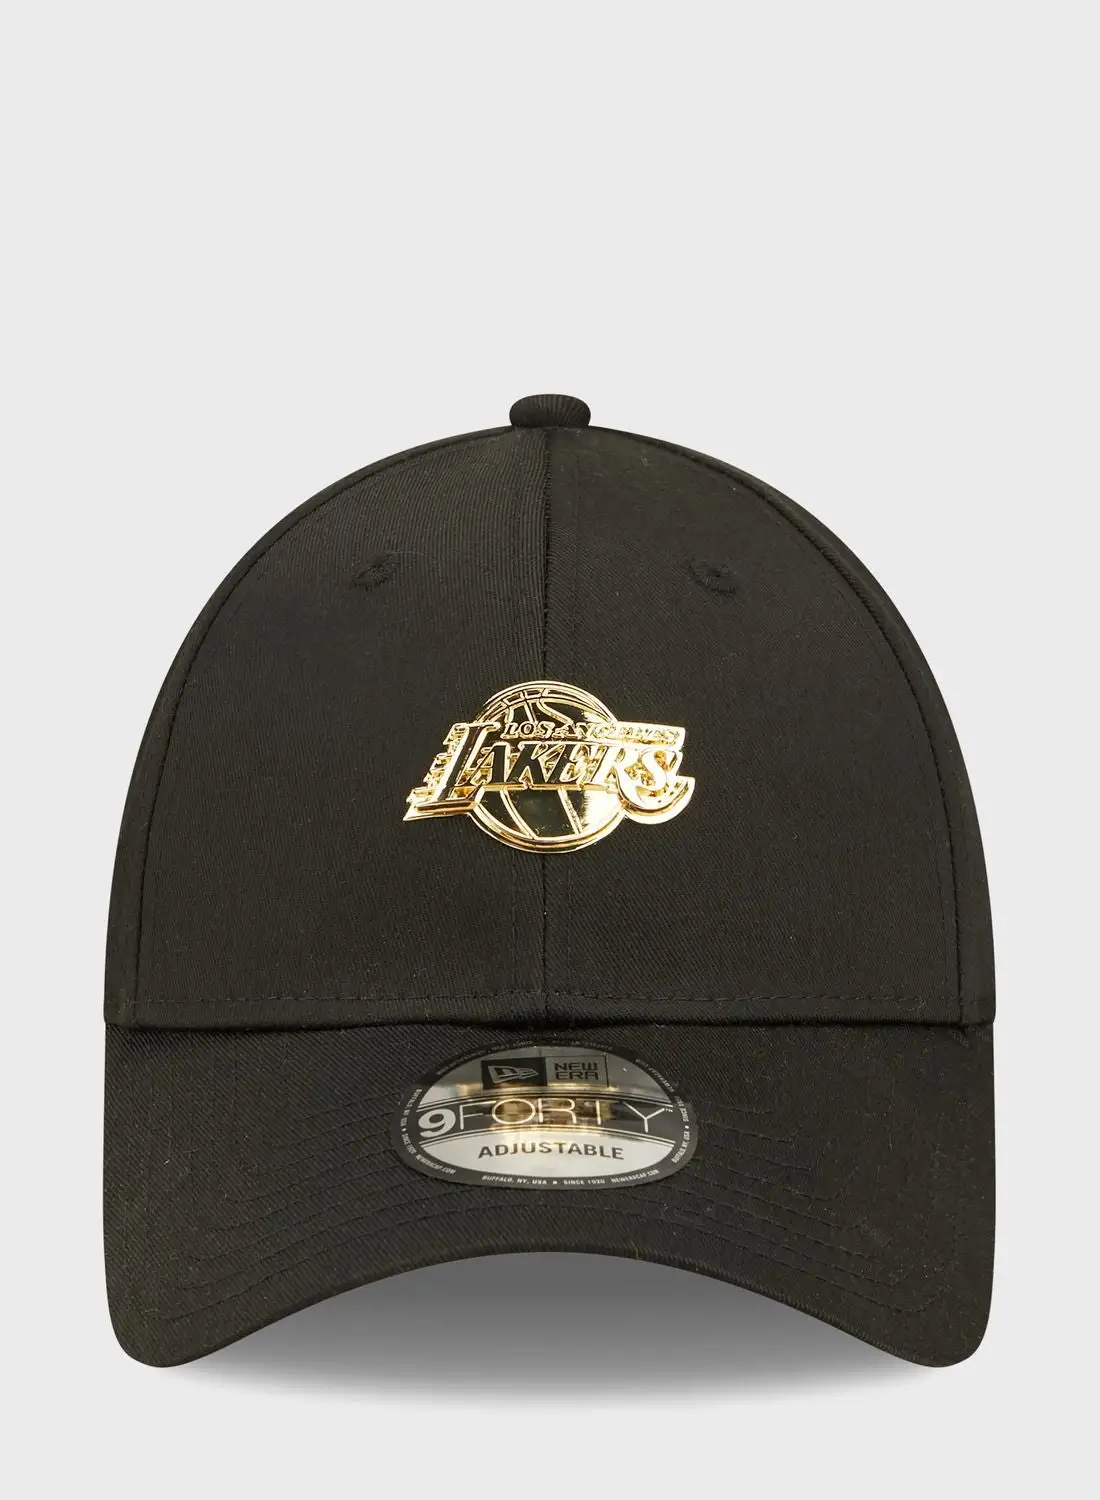 قبعة نيو إيرا 9 فورتي لوس أنجلوس ليكرز